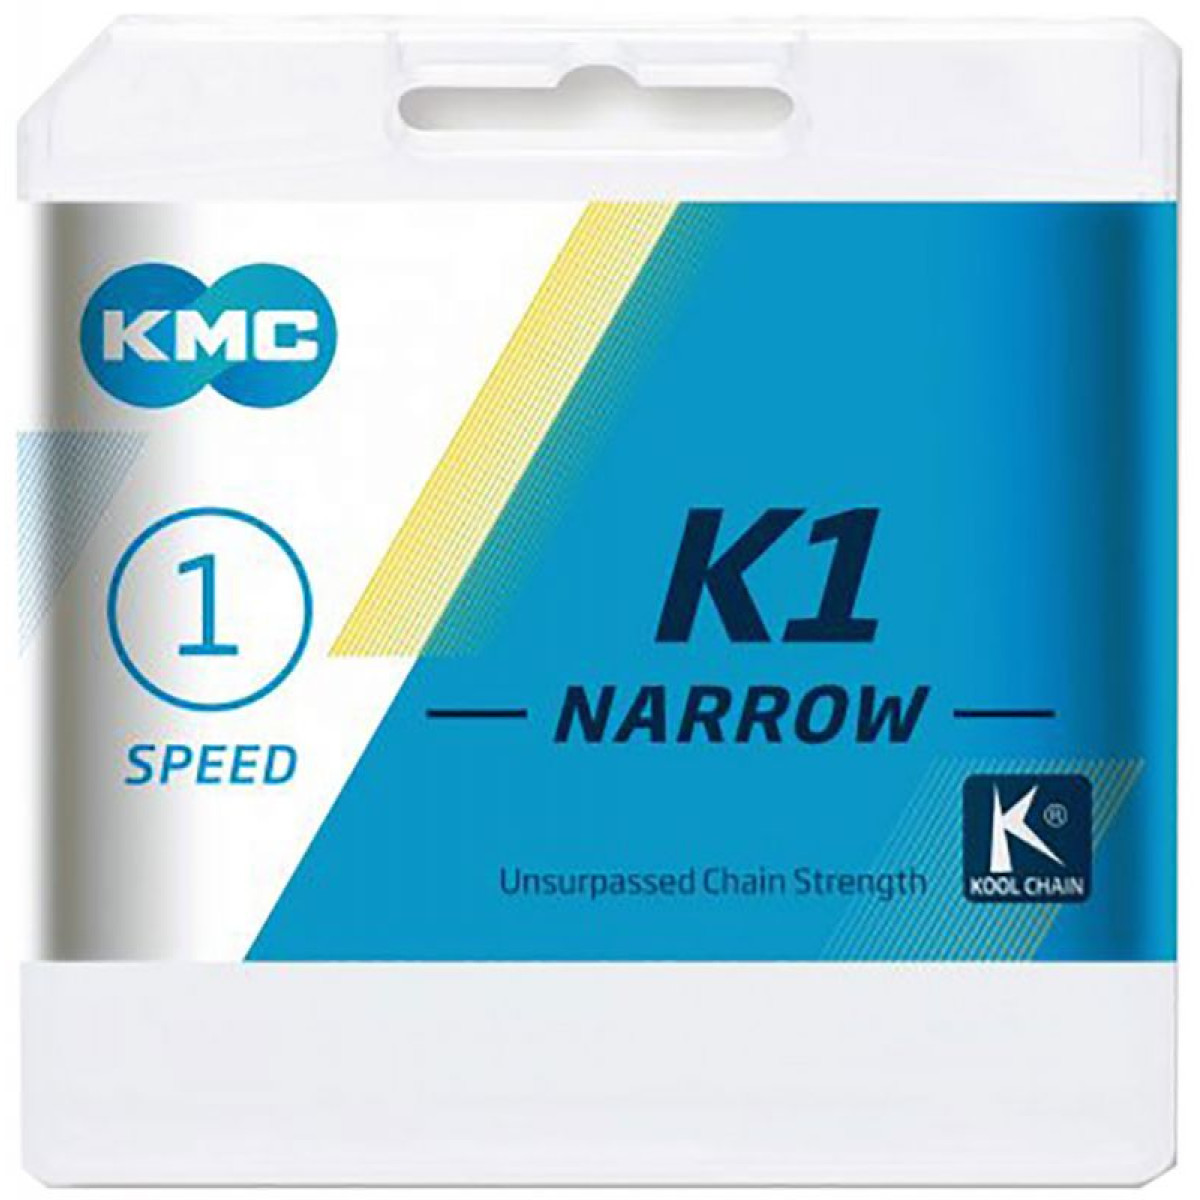 KMC K1 Narrow grandinė / 1 pavaros / Silver